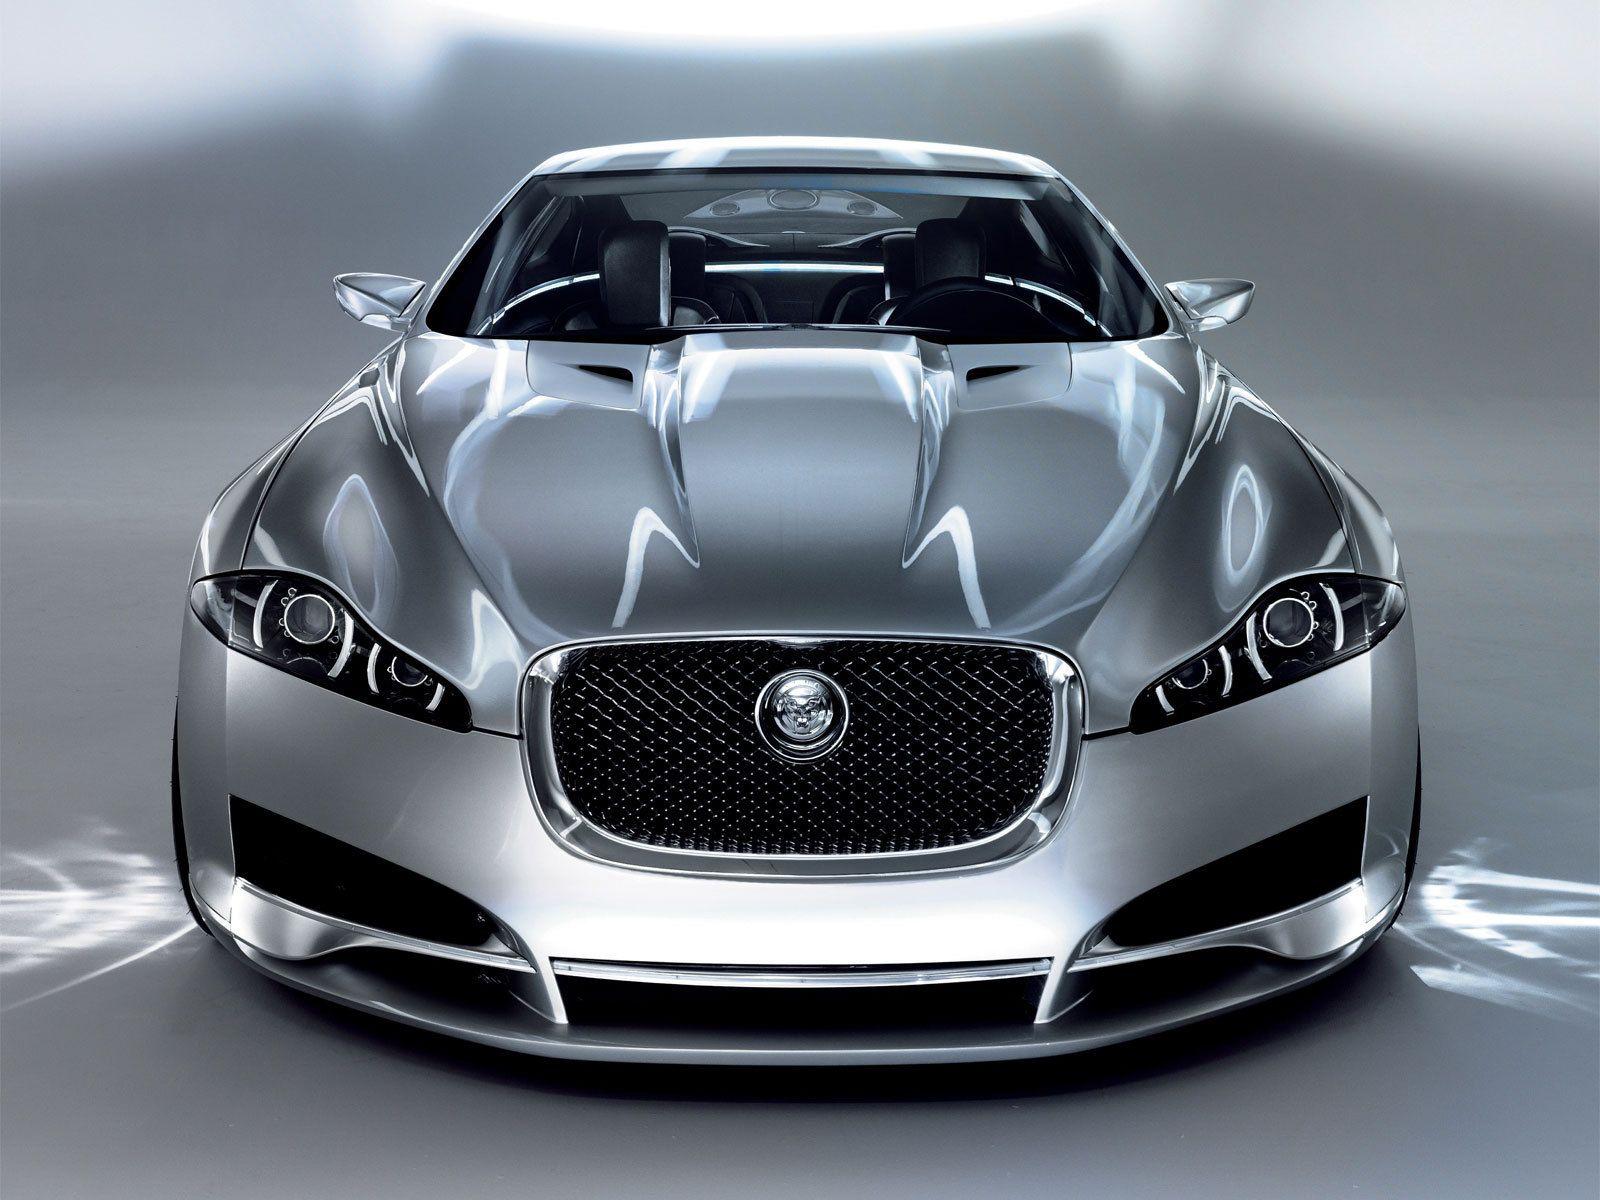 جگوار XF (Jaguar Xf)